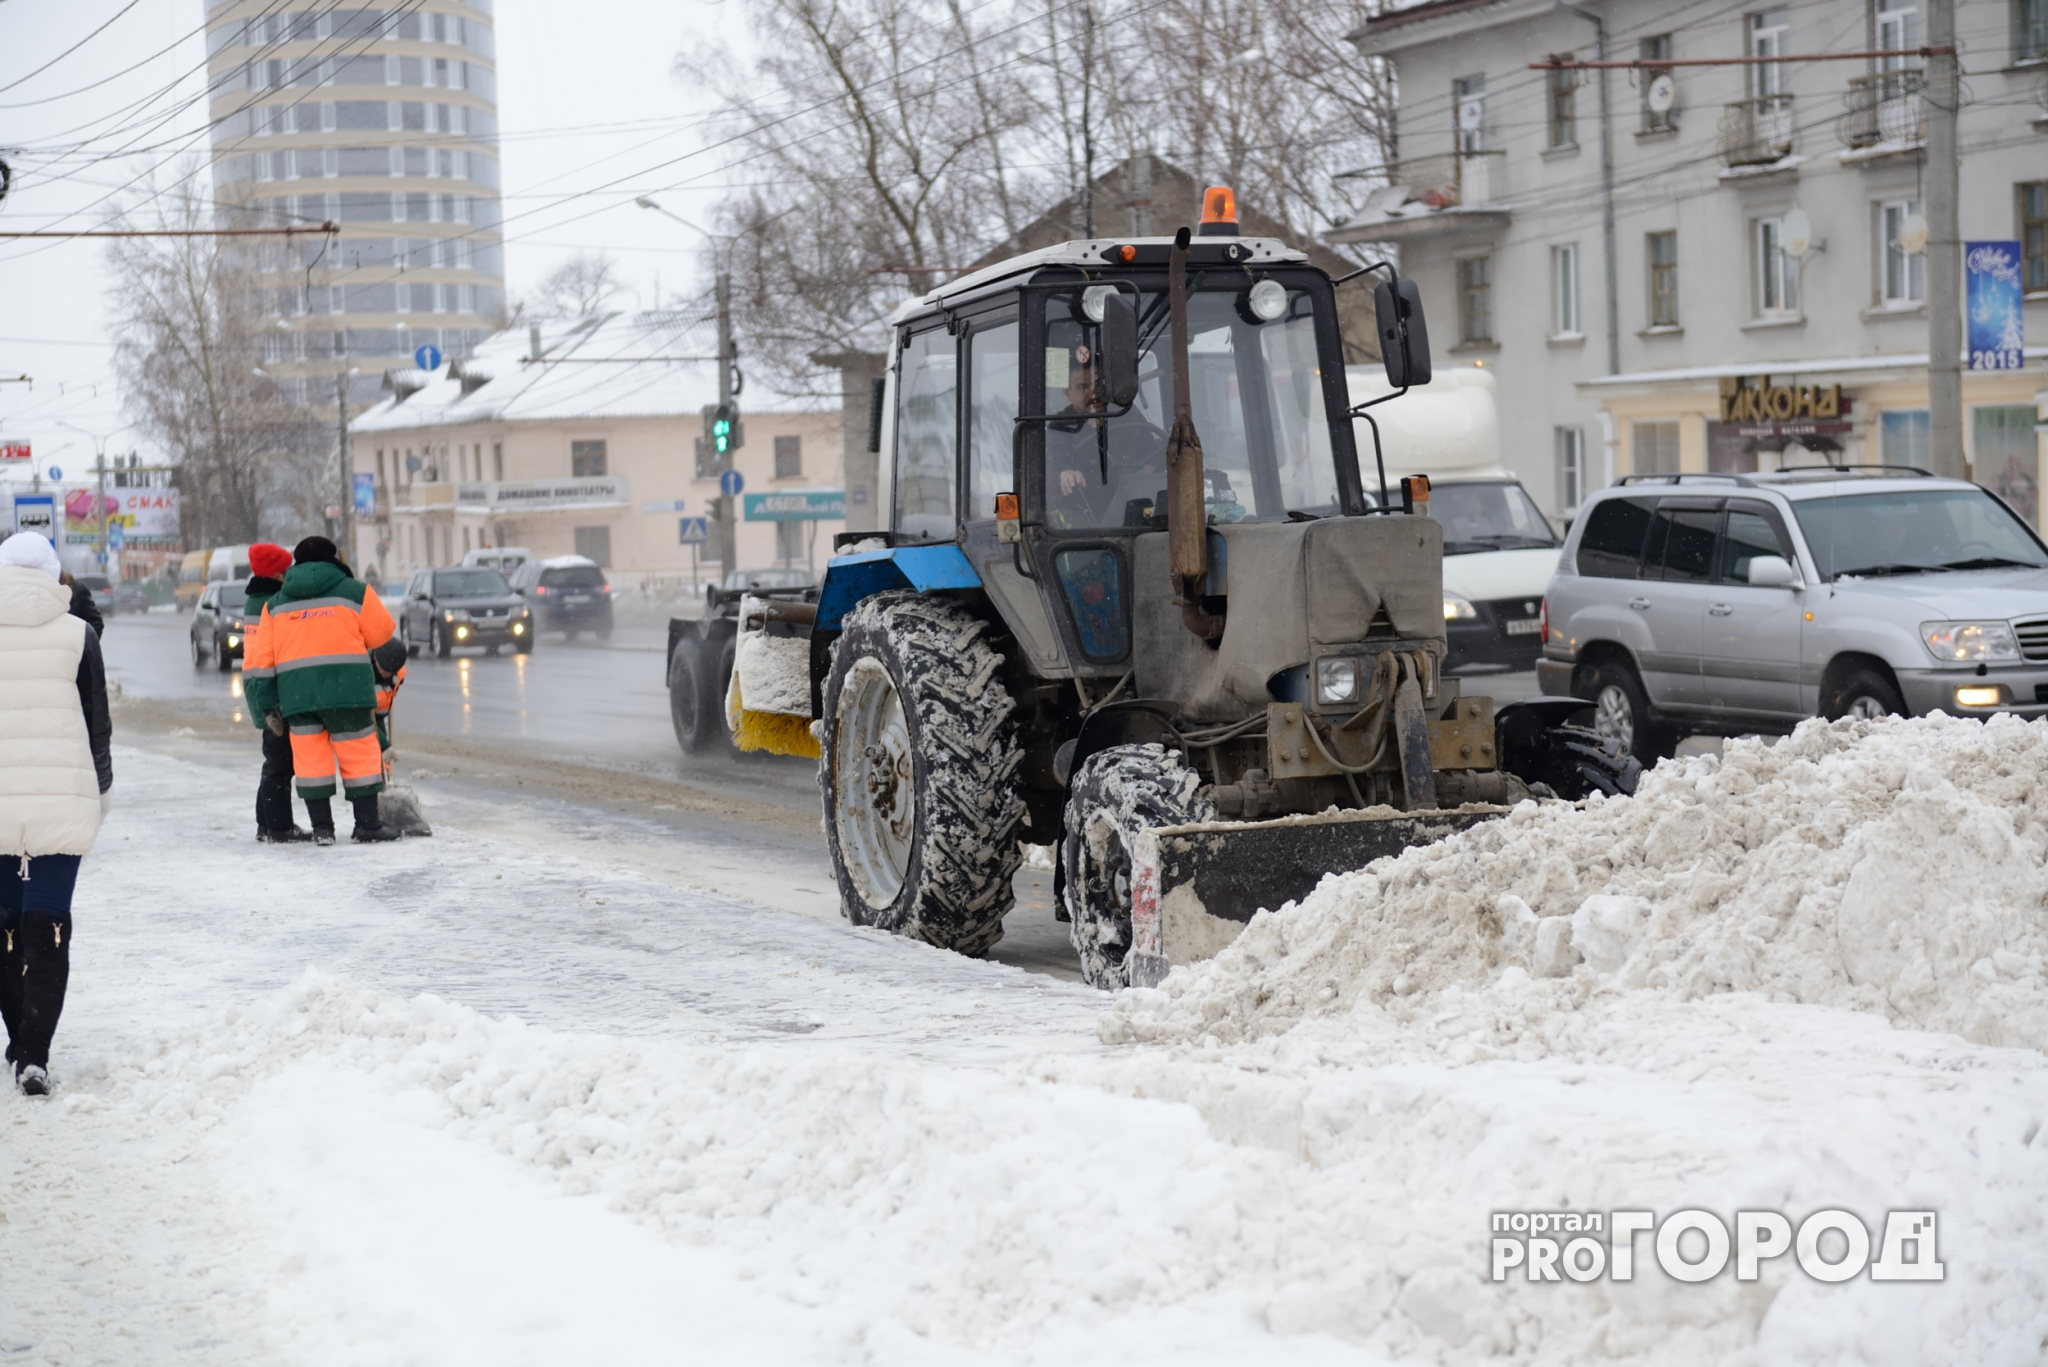 Мэр Сыктывкара Валерий Козлов отчитал управляющие компании за уборку снега